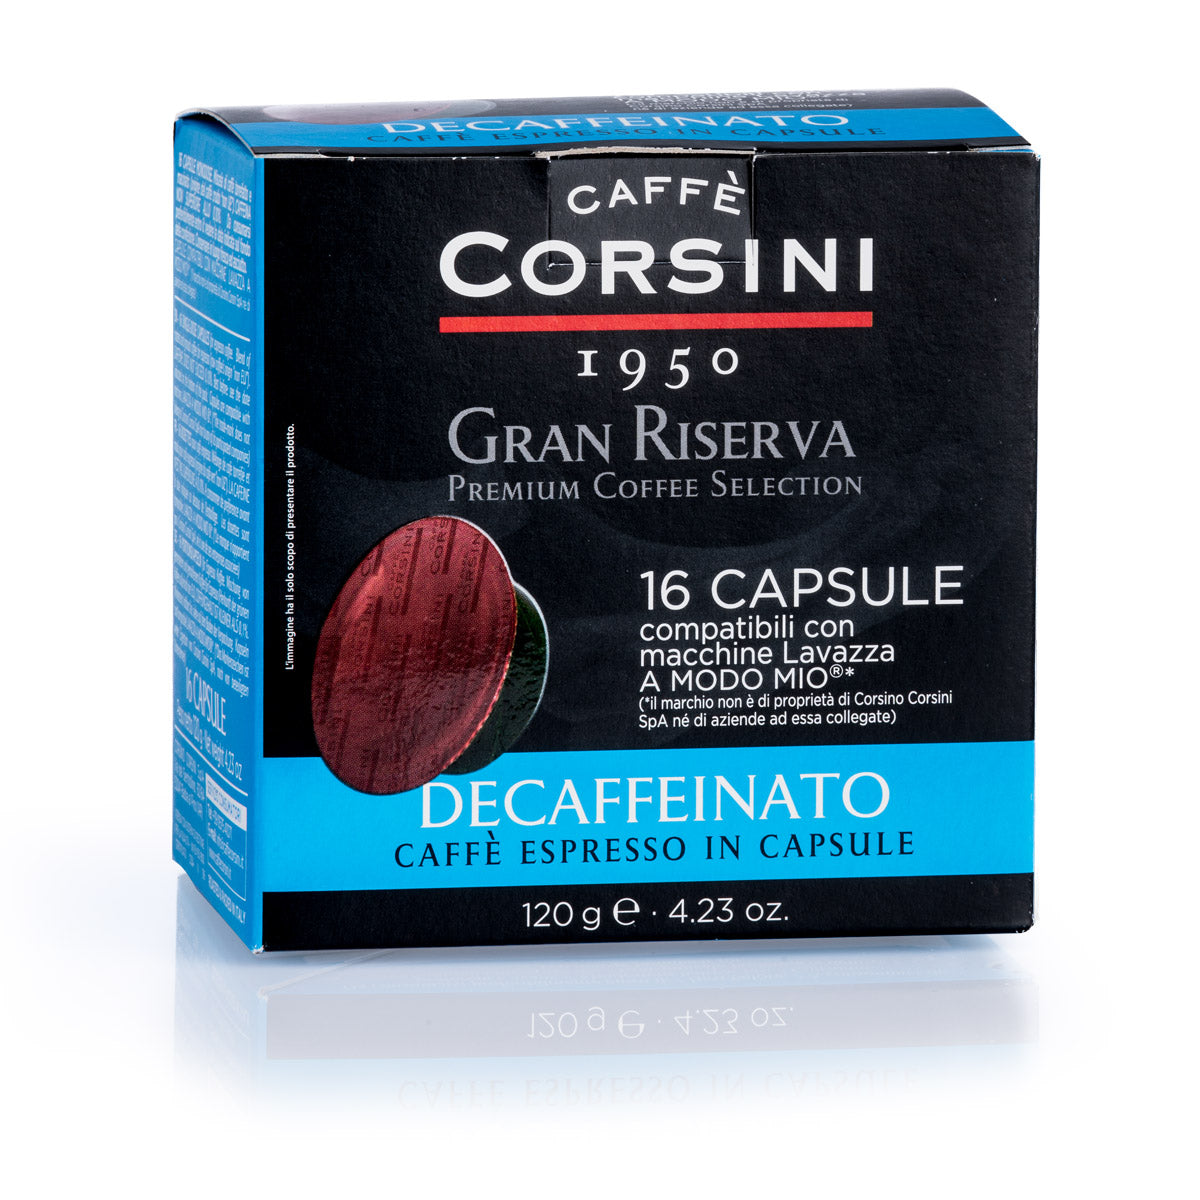 16 Lavazza®* A Modo Mio®* compatible coffee capsules per pack | Gran Riserva Decaffeinato | Box of 12